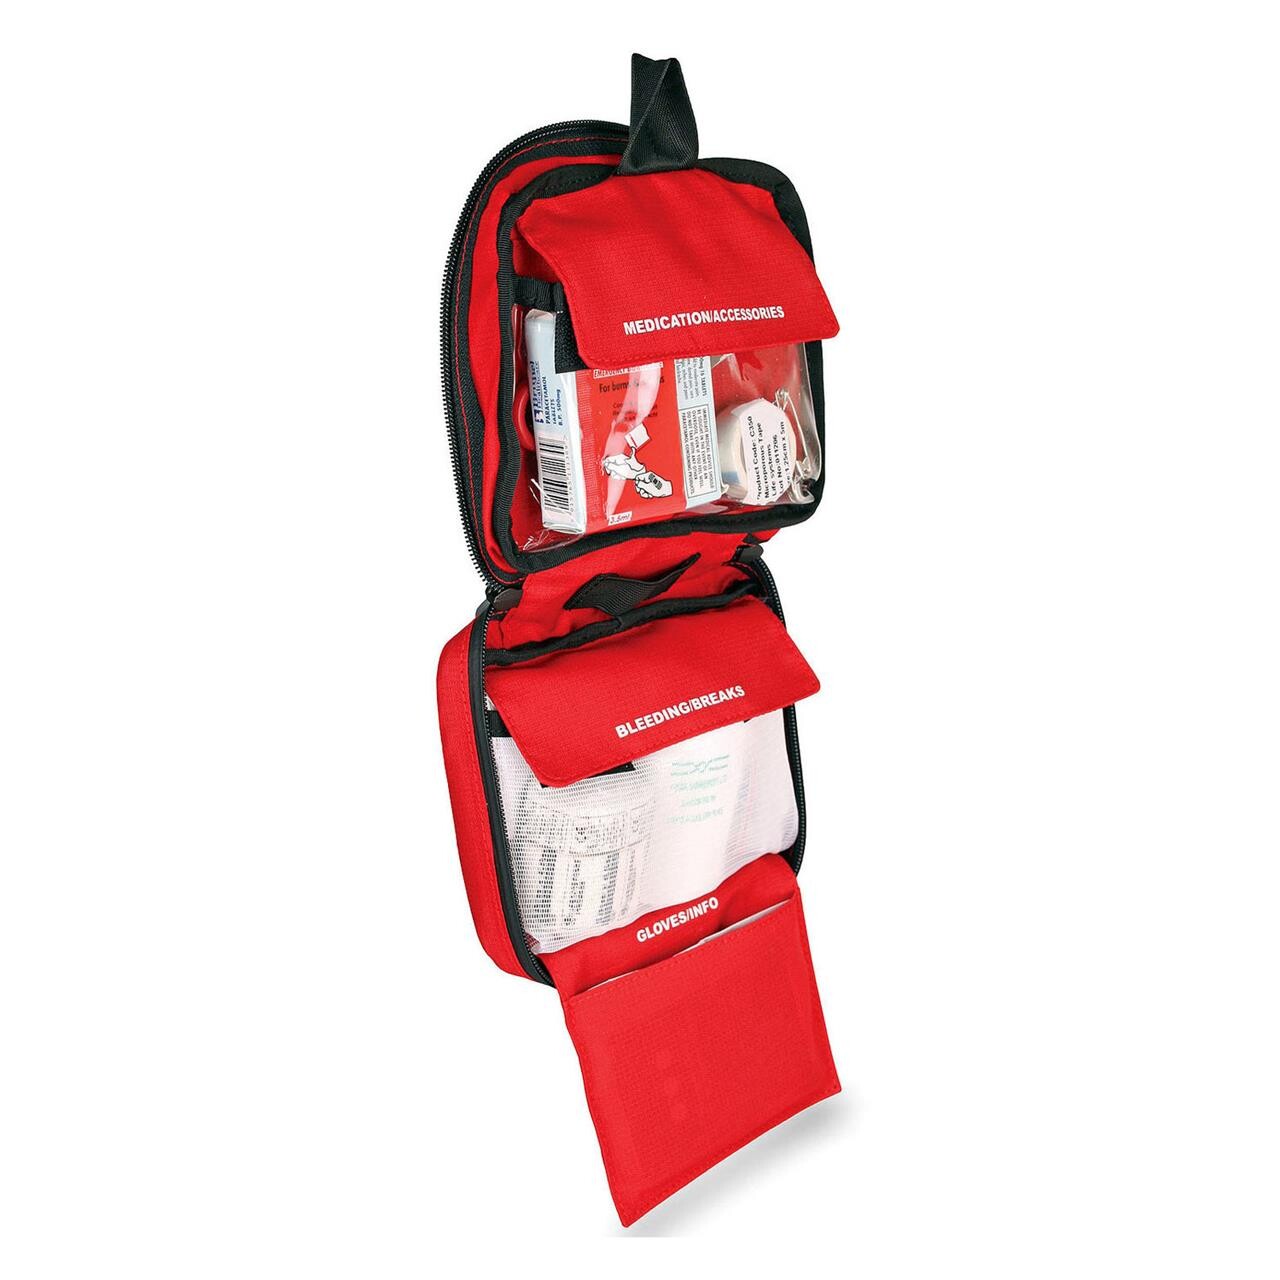 Billede af Lifesystems Adventurer First Aid Kit hos Friluftsland.dk